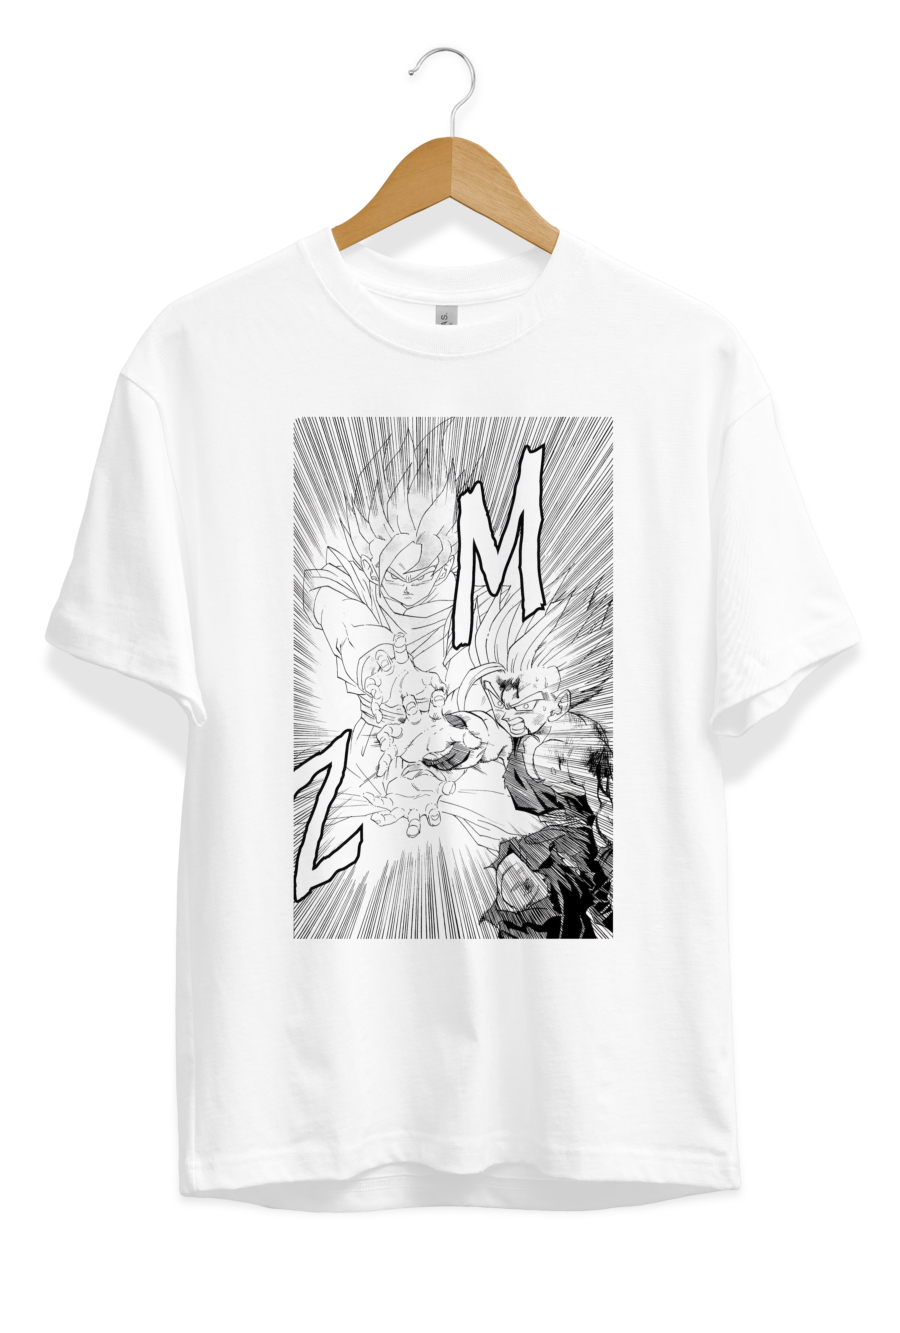 Goku and Gohan vs Cell T-Shirt Artwork